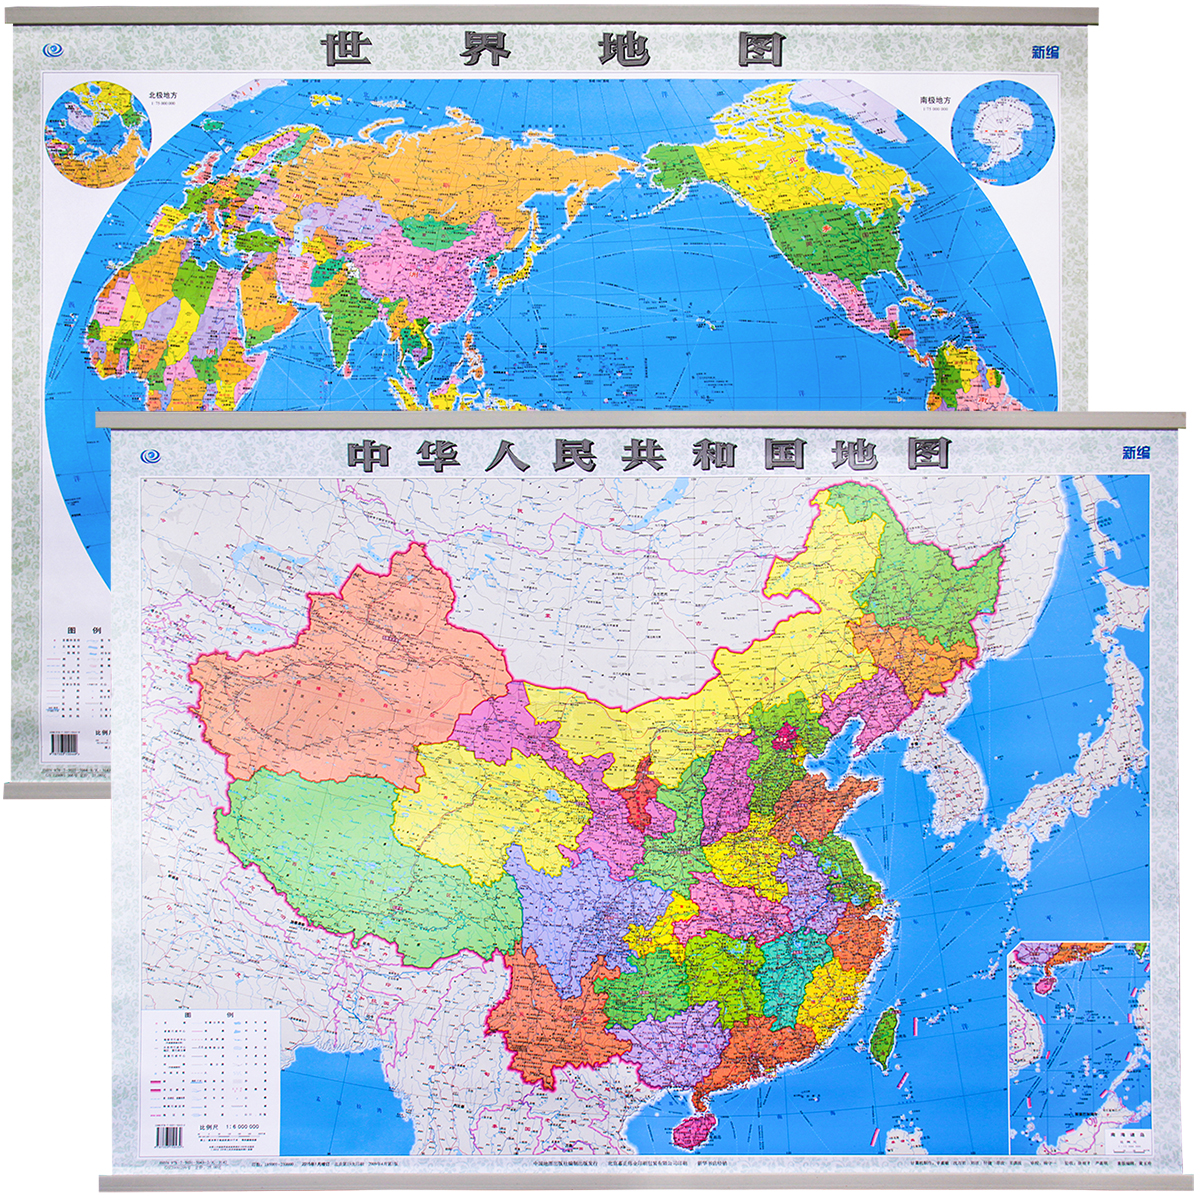 【正版买一赠三】2015中国地图挂图1.1+世界地图挂图1.1米全国商务办公室通用中学地理超值套装共2张中华人民共和国地图 世界地图